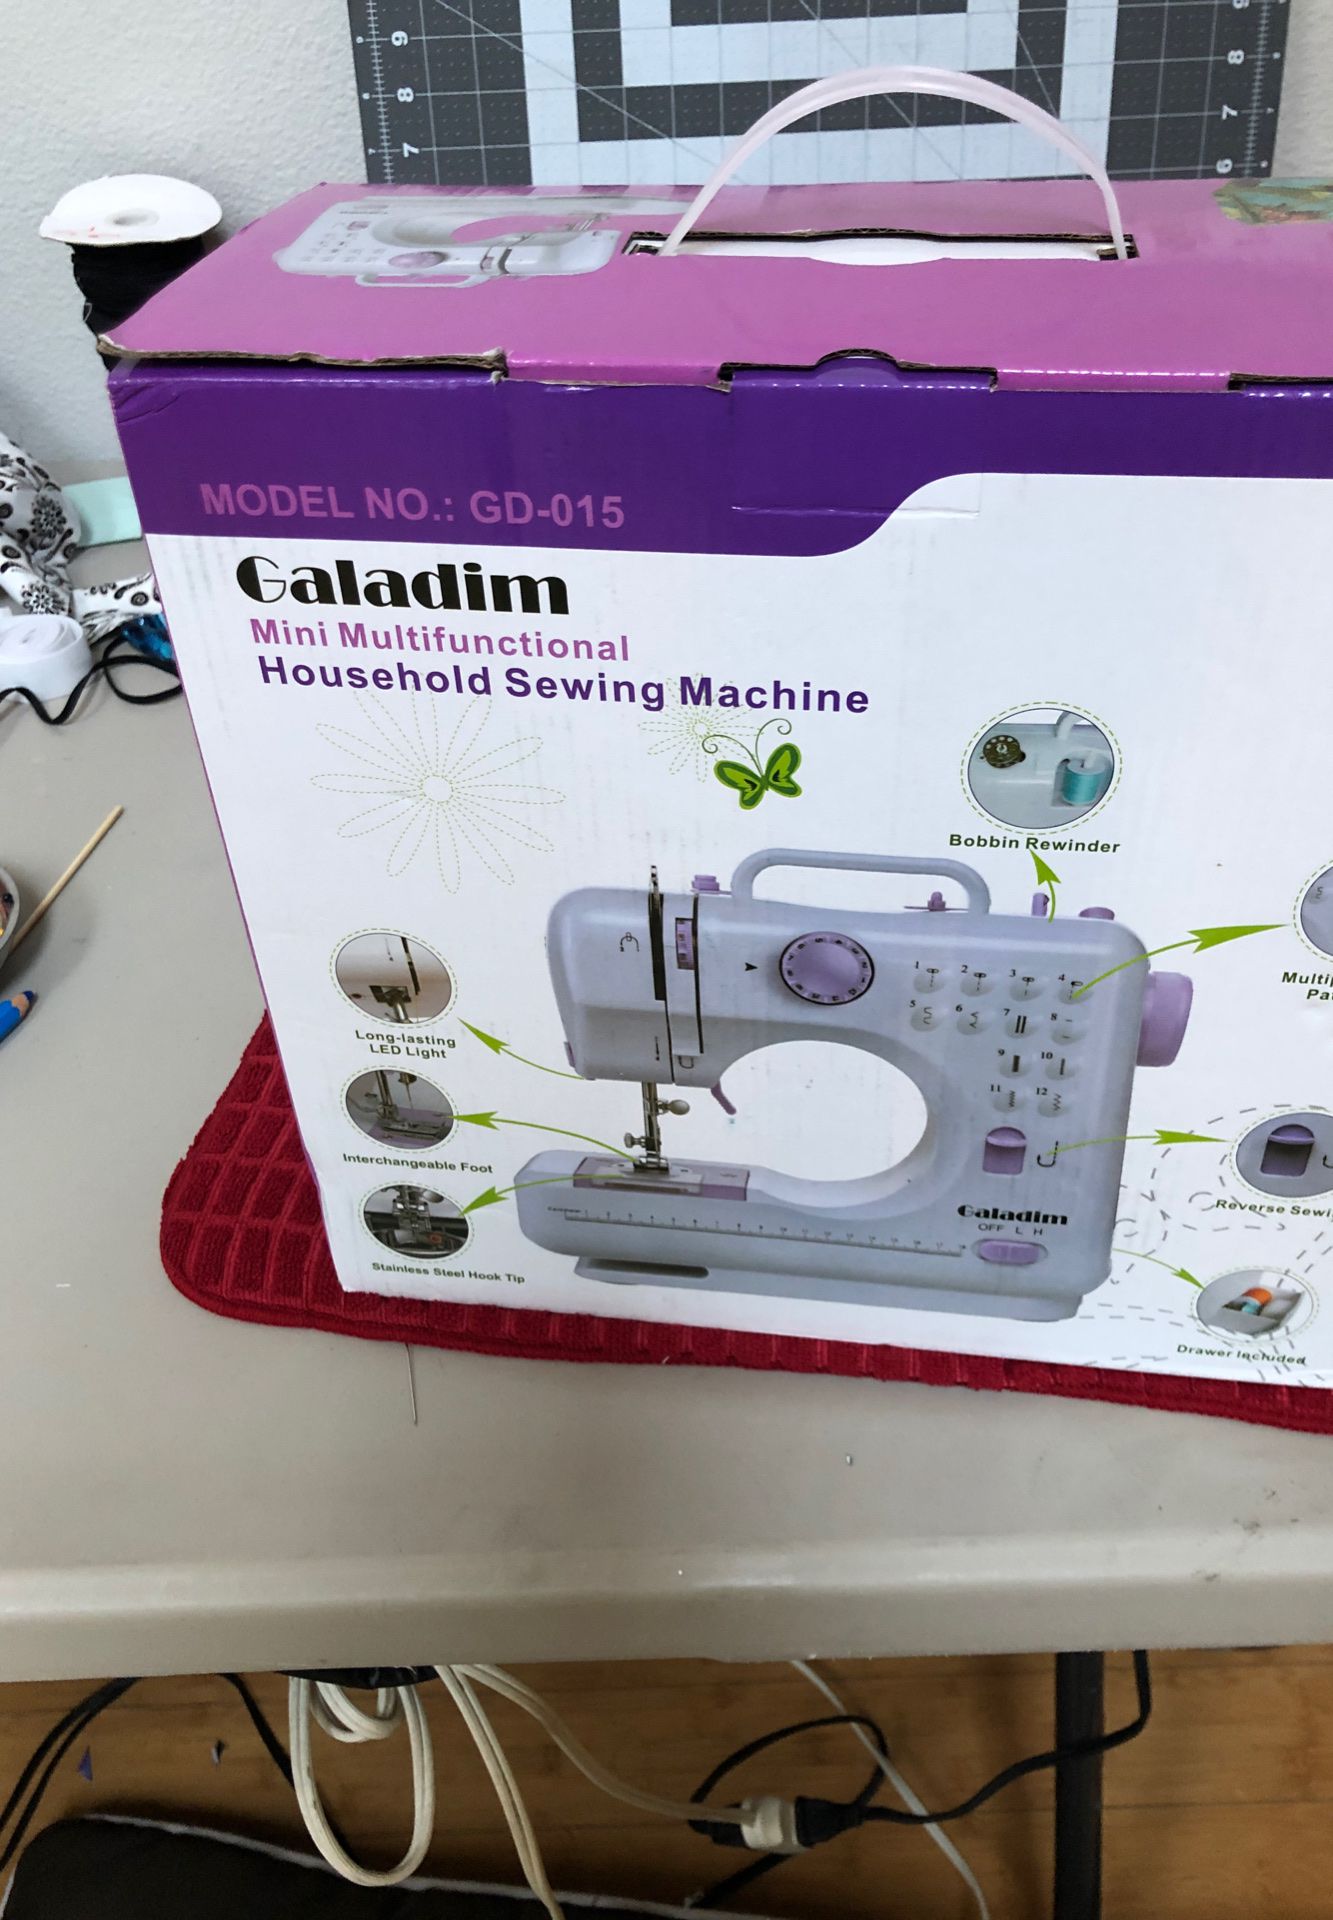 Brand new sewing machine